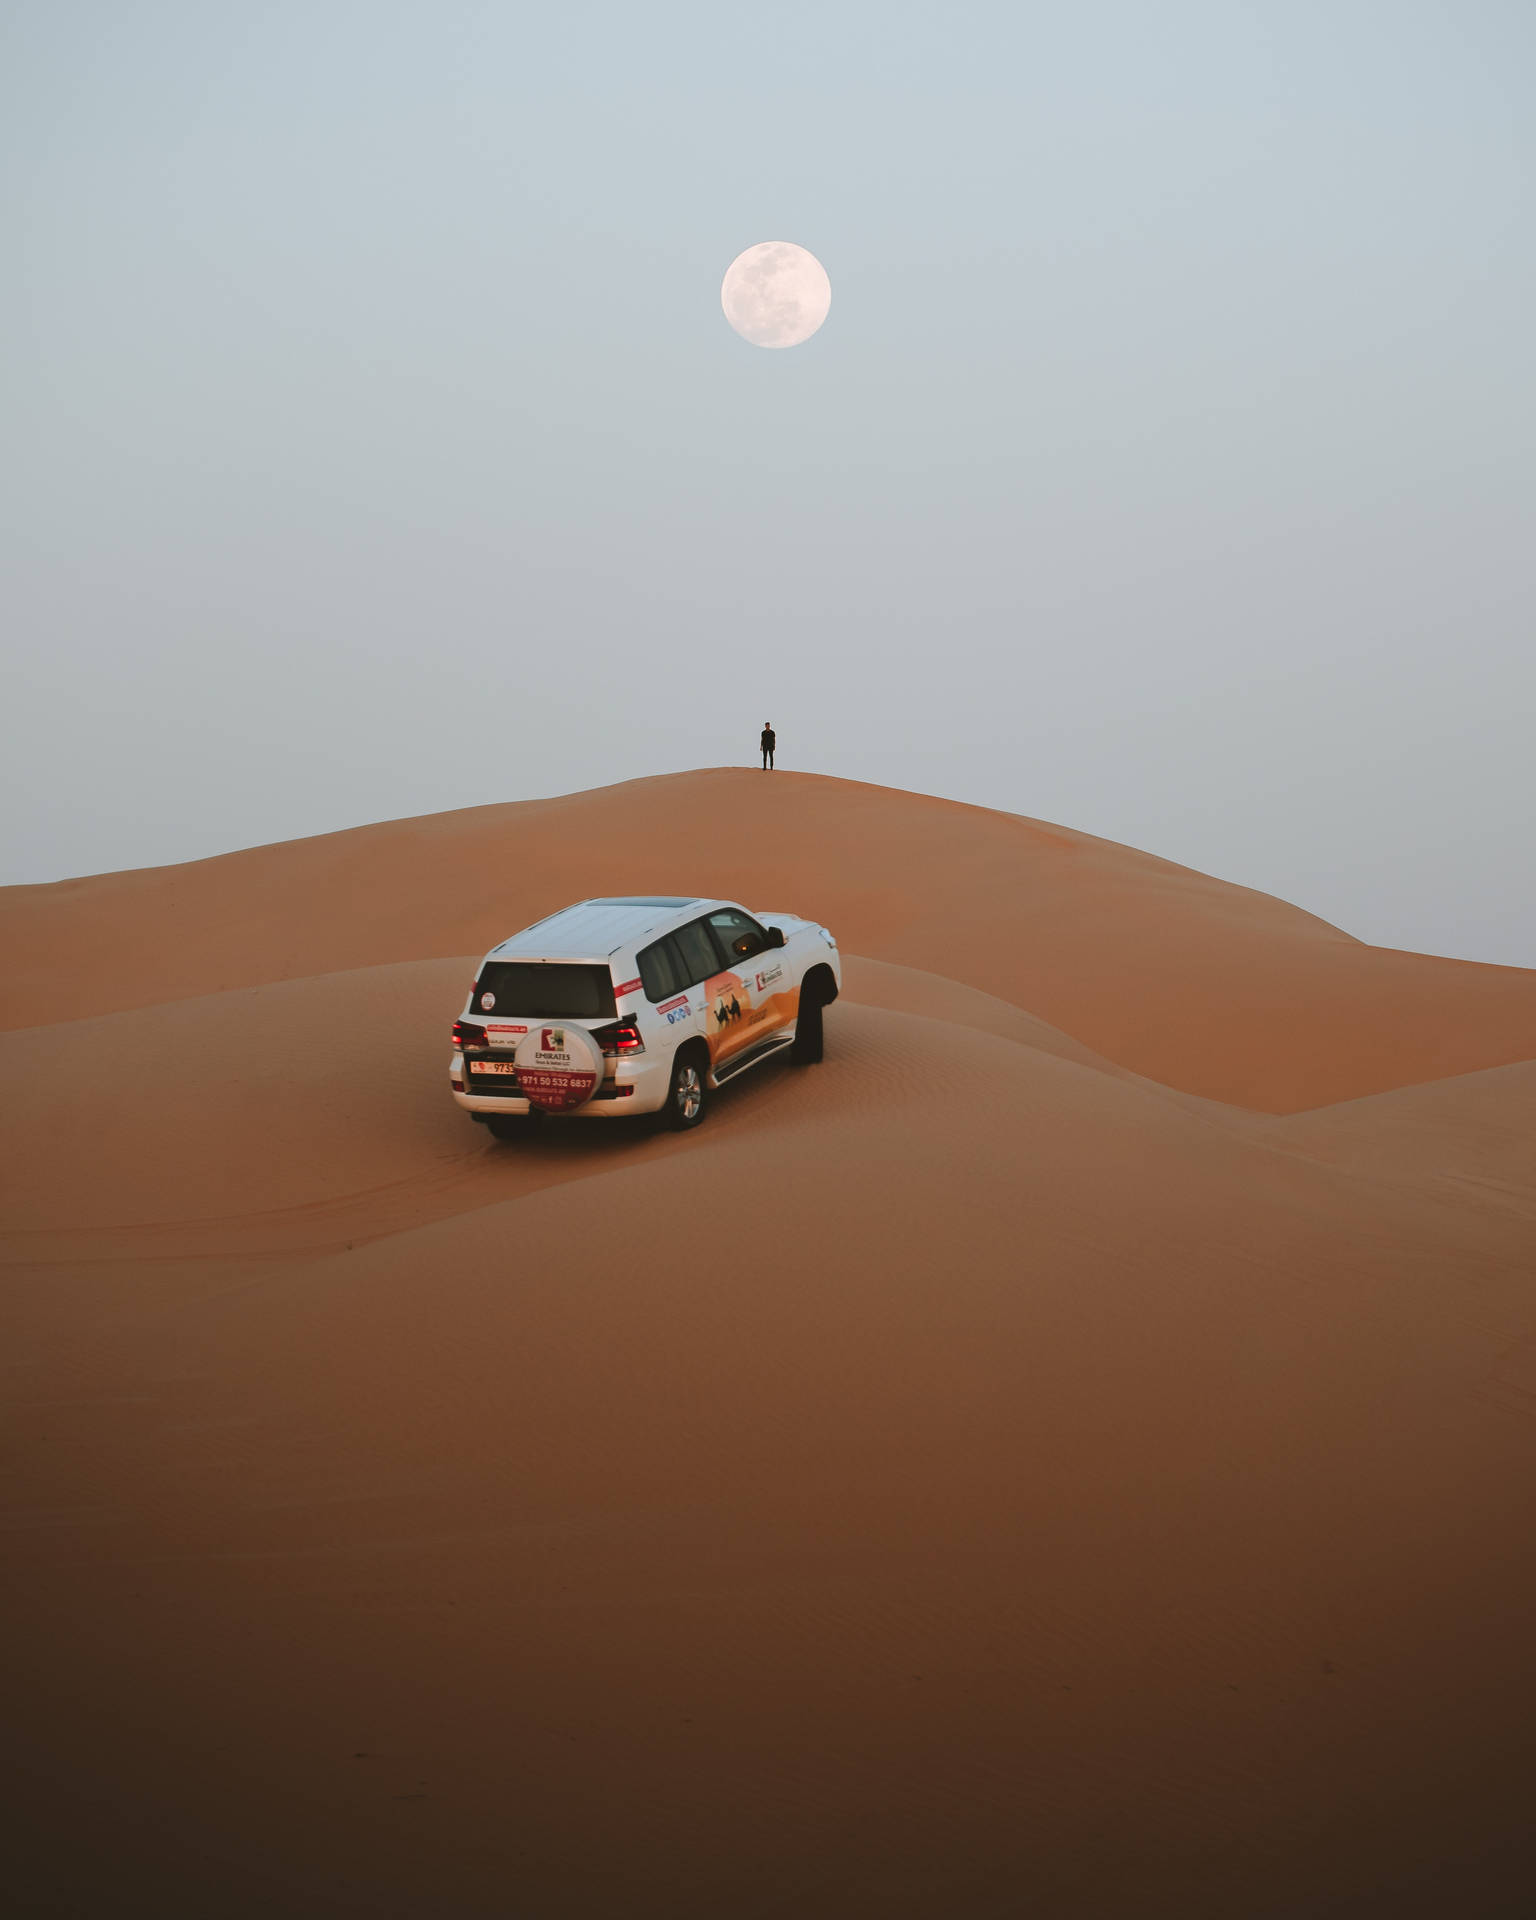 Full Moon In Desert Background